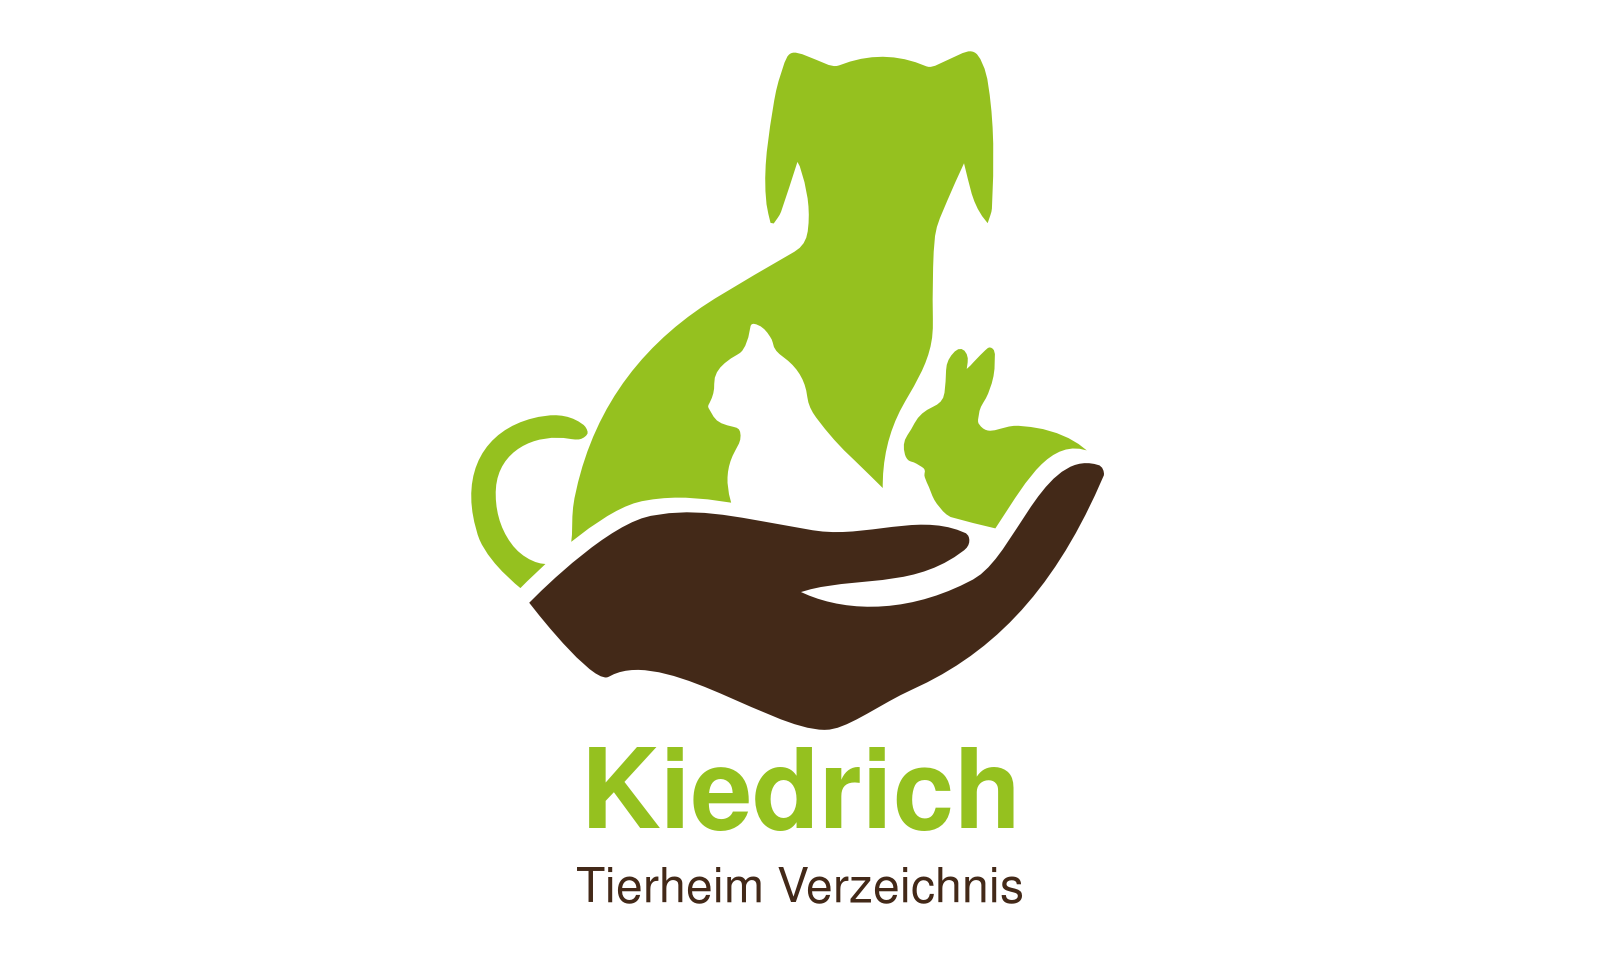 Tierheim Kiedrich